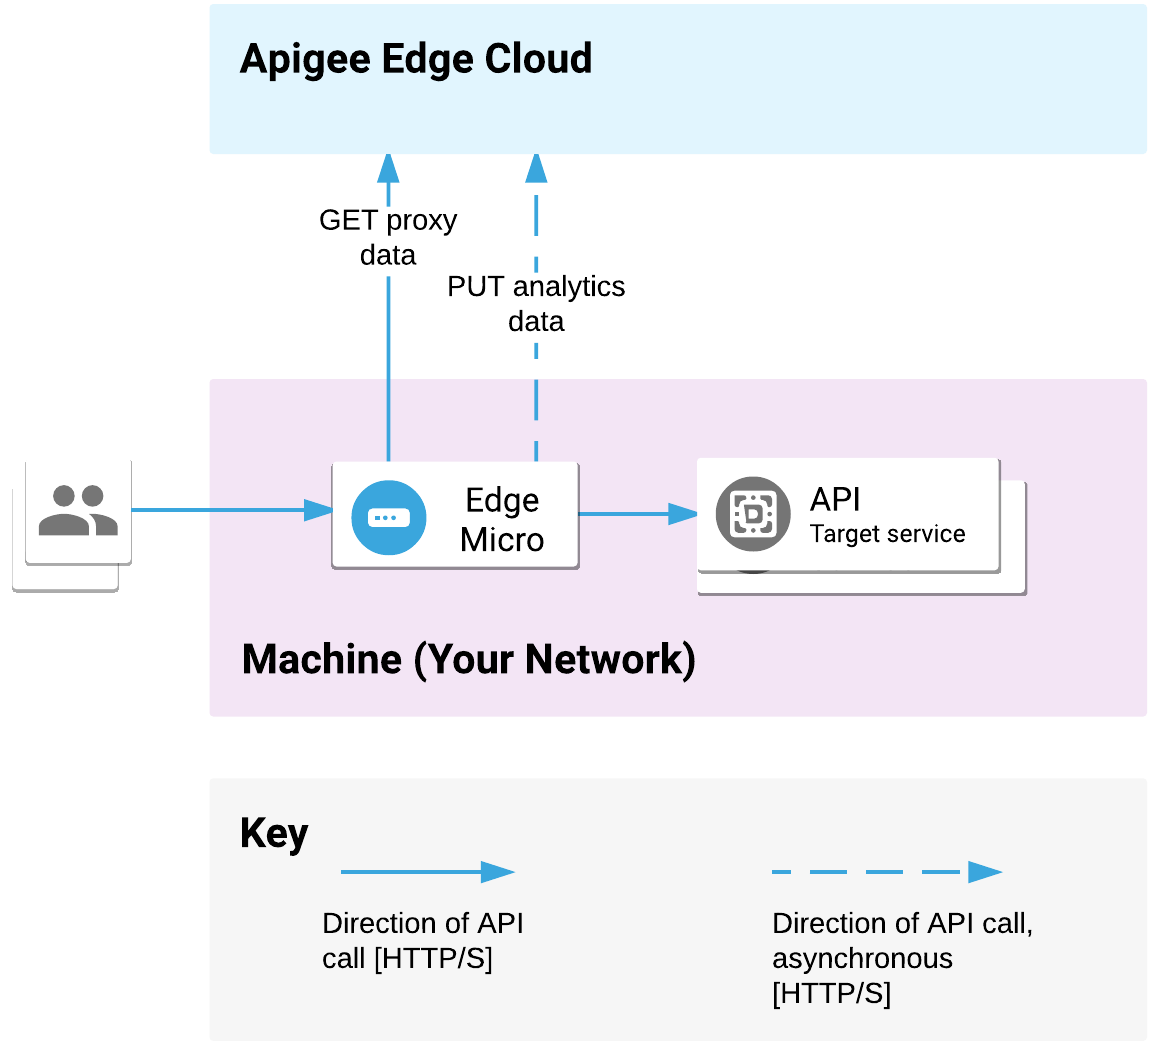 Cổng vi mô được triển khai trên mạng của bạn. Thư viện này xử lý các yêu cầu API từ ứng dụng và gọi các dịch vụ mục tiêu. Cổng vi mô giao tiếp dữ liệu proxy và số liệu phân tích bằng Apigee Edge Cloud.